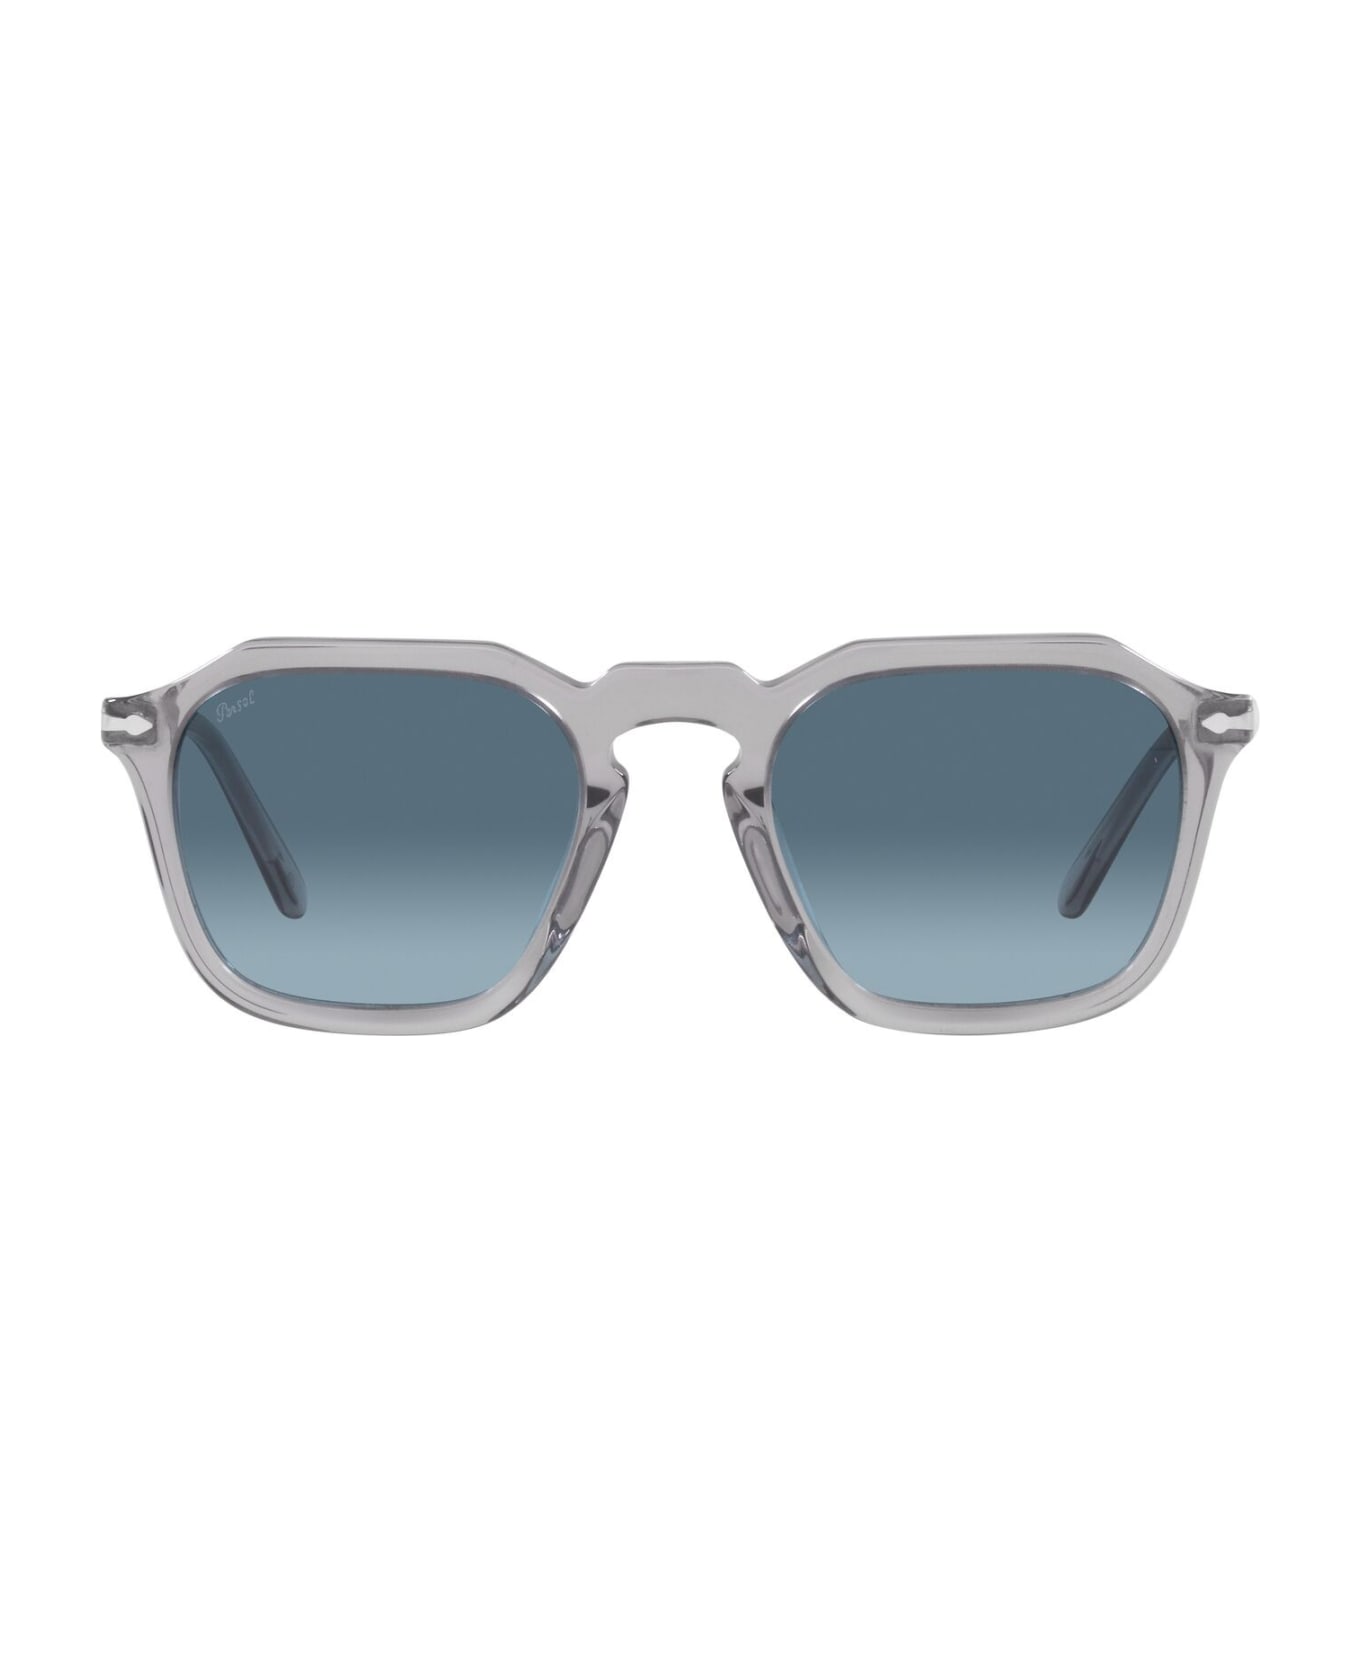 Persol Sunglasses - Grigio/Blu sfumato